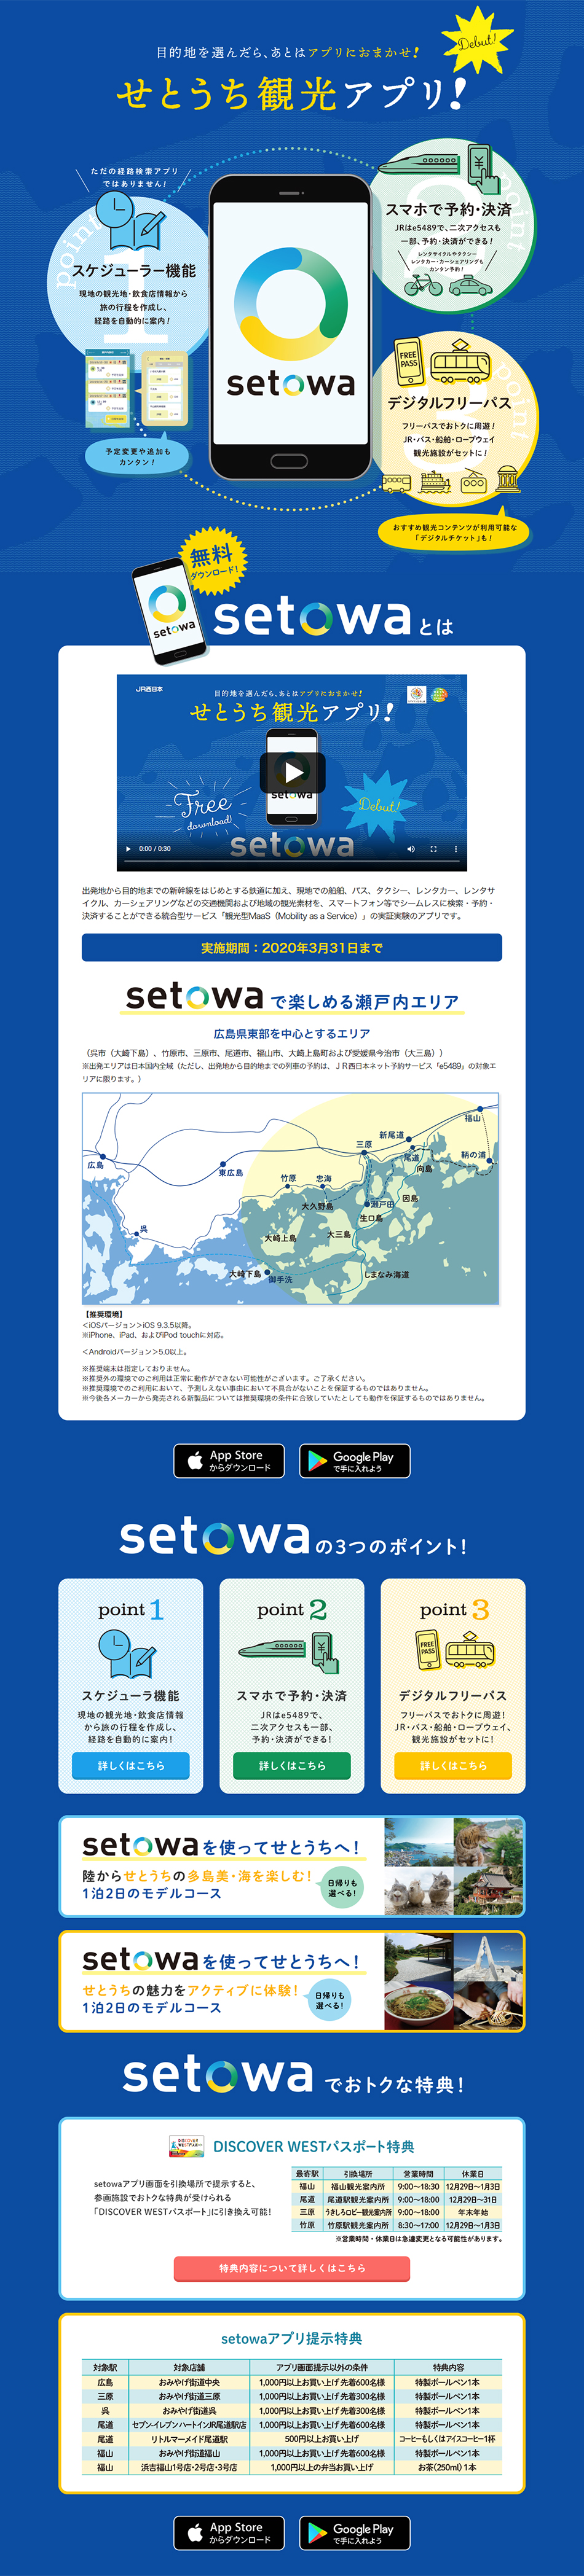 せとうち観光アプリ「setowa」_pc_1